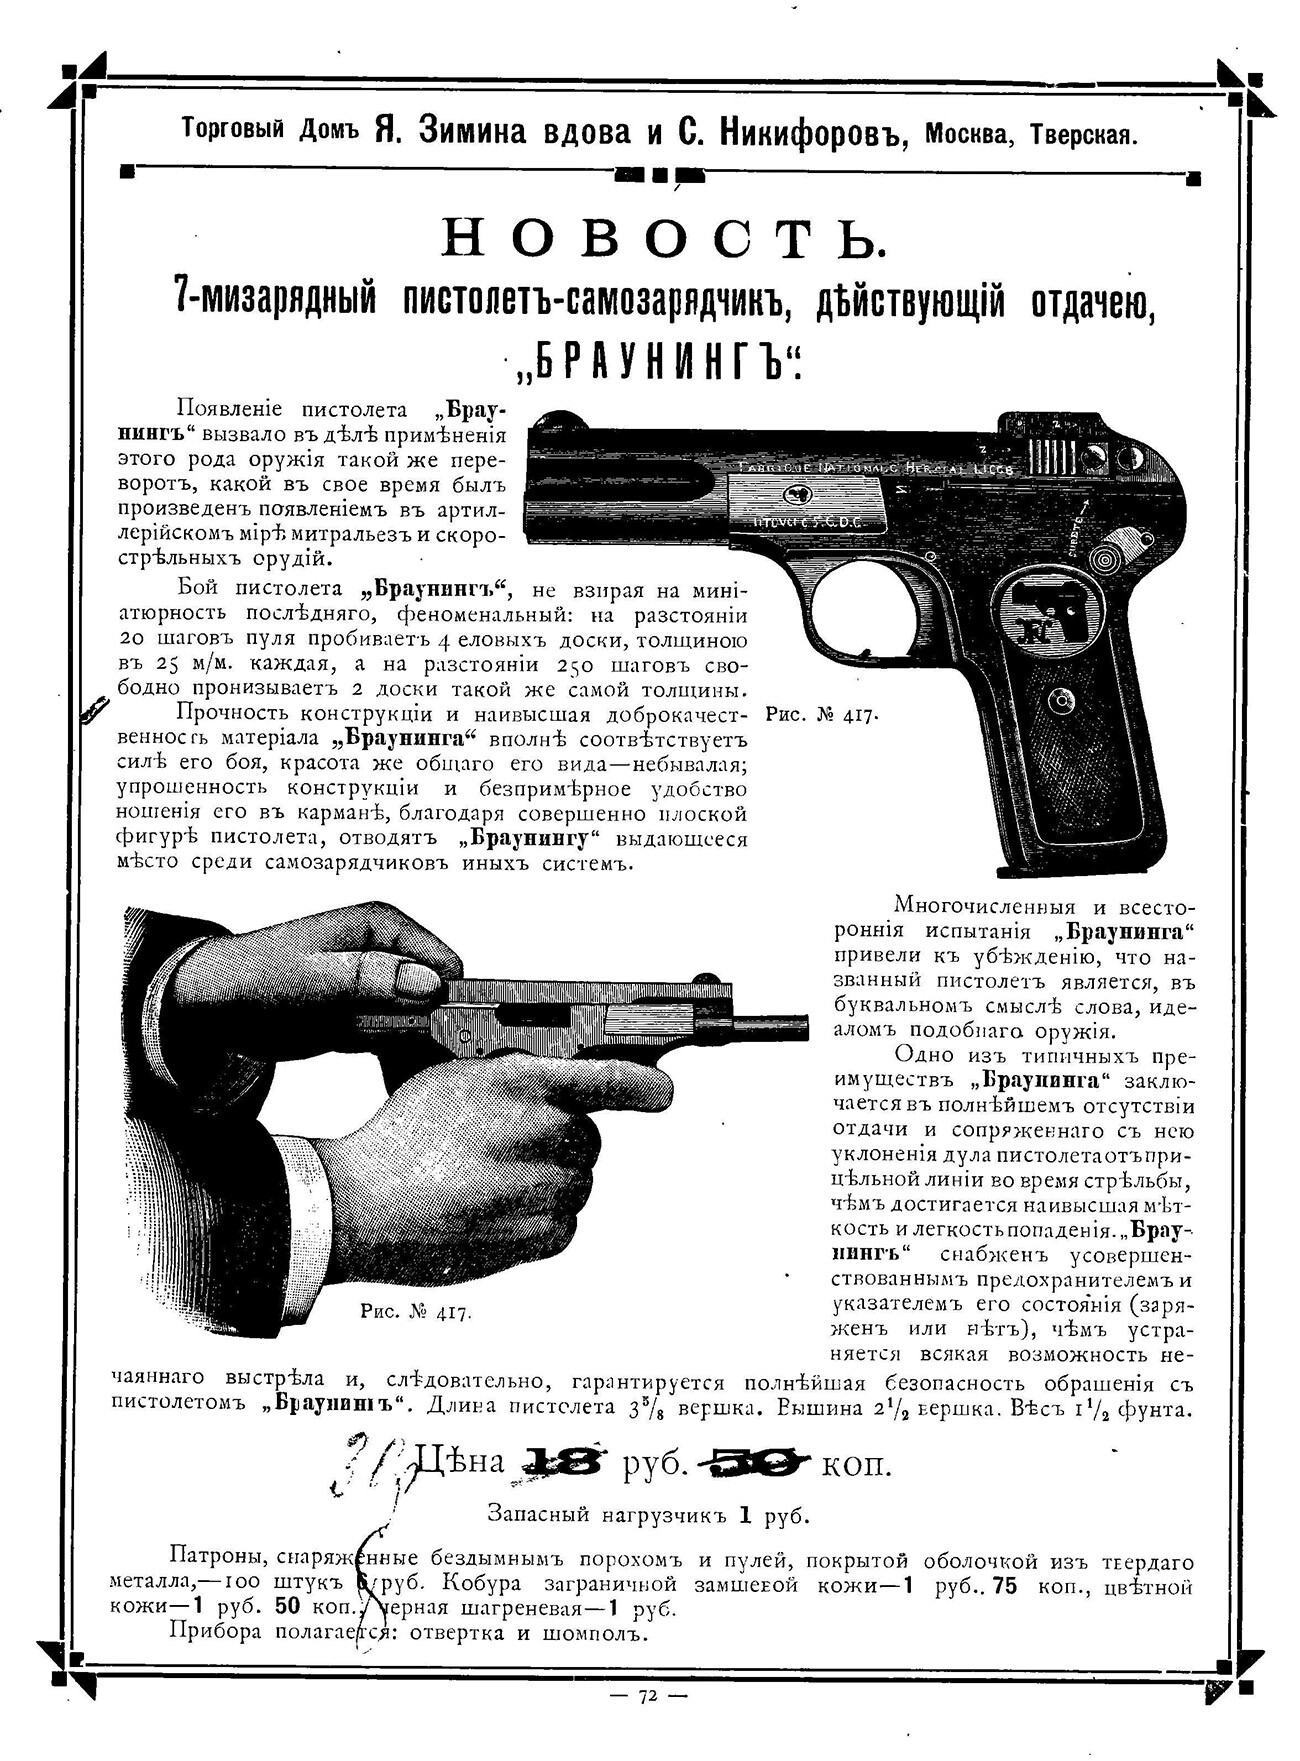 Tract annonçant l'apparition d'un pistolet Browning dans une maison de commerce de Moscou 